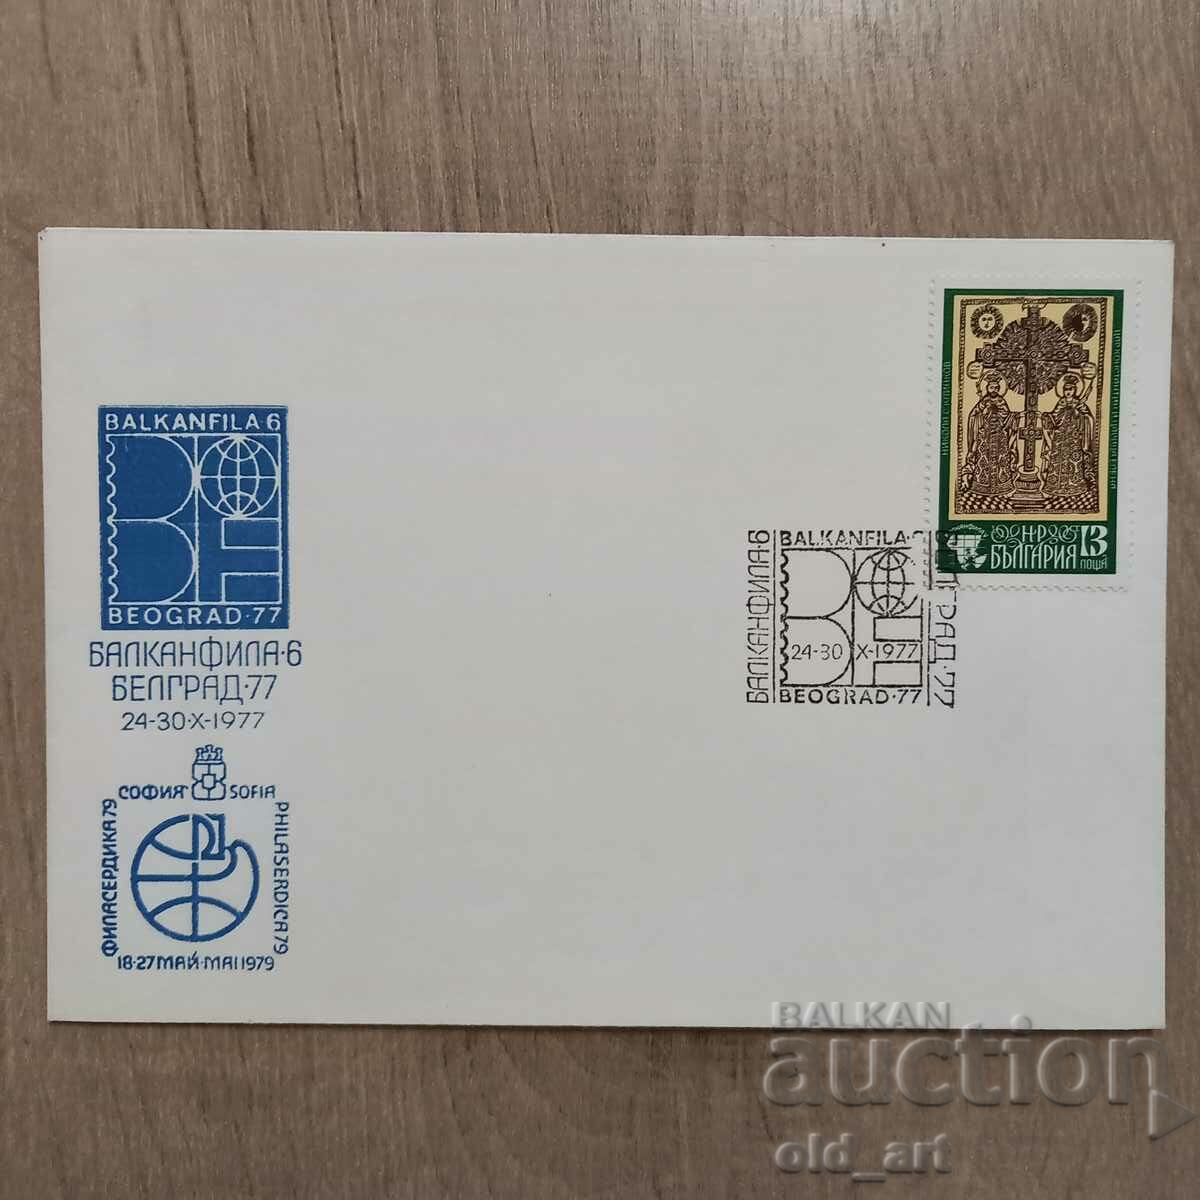 Plic postal - Balkanfila 6 Belgrad